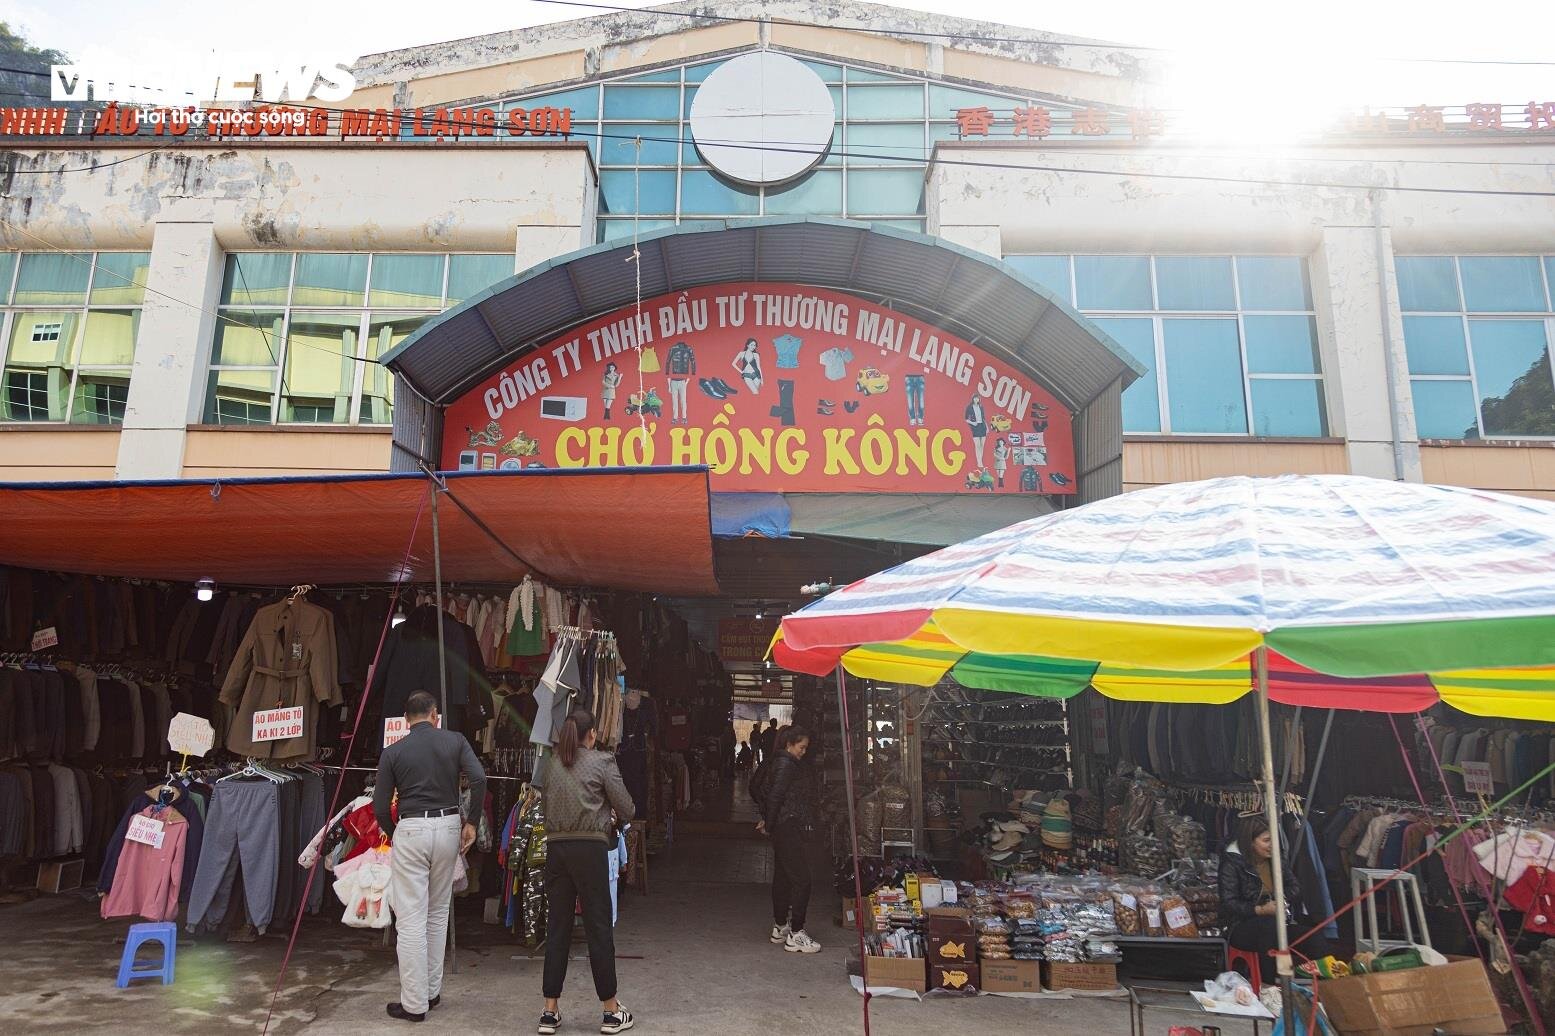 Nằm bên cạnh chợ cửa khẩu Tân Thanh là khu chợ Hồng Kông, Trung tâm thương mại Việt - Trung cũng chung cảnh ngộ vắng vẻ, gần như chỉ có người bán.